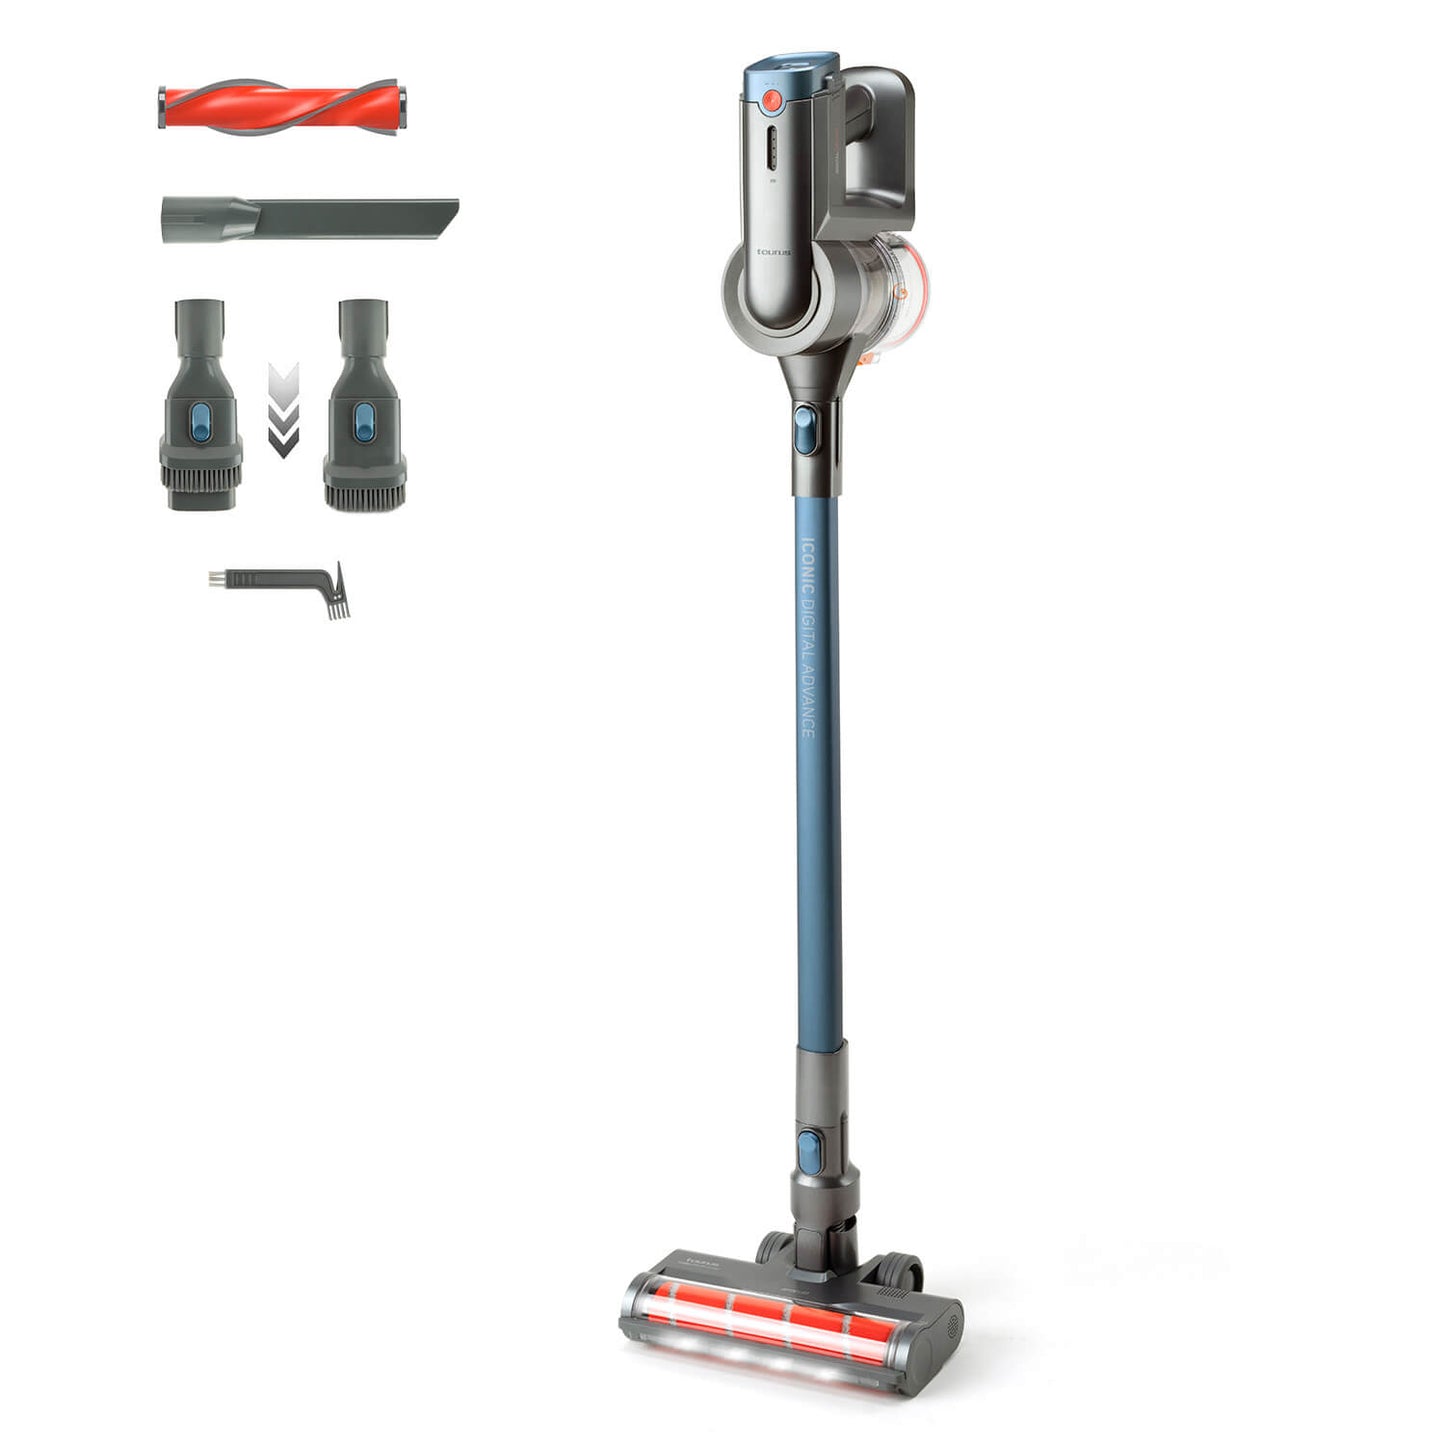 Taurus Filter Net broom Vacuum Cleaner Ultimate Go Digital Animal HVCA7223